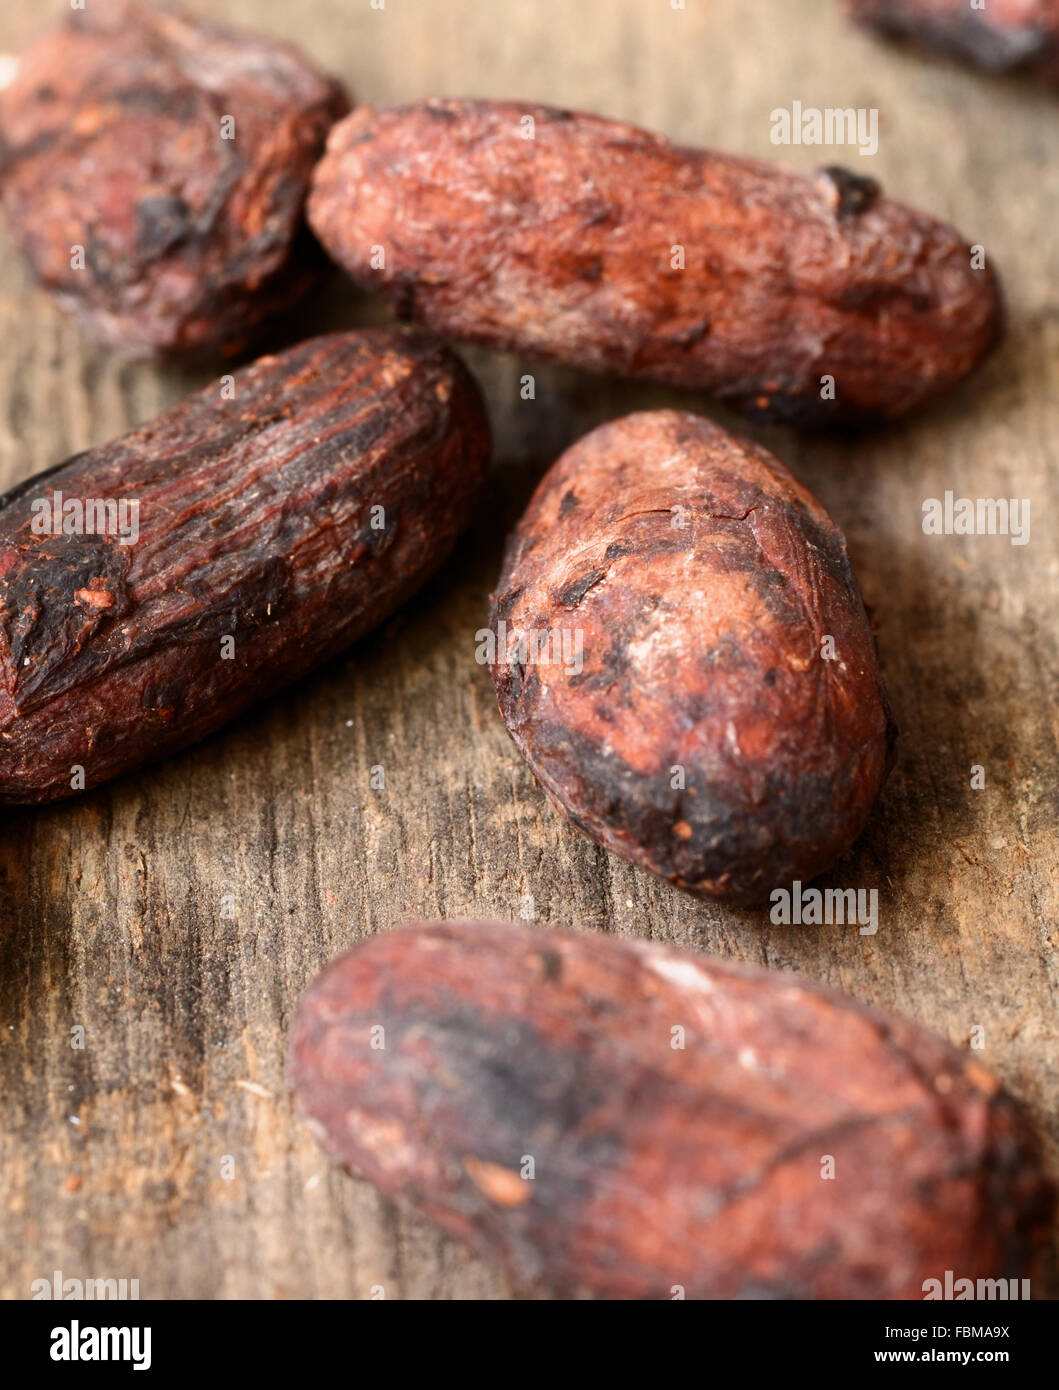 Les fèves de cacao brutes sur un fond sombre. Banque D'Images